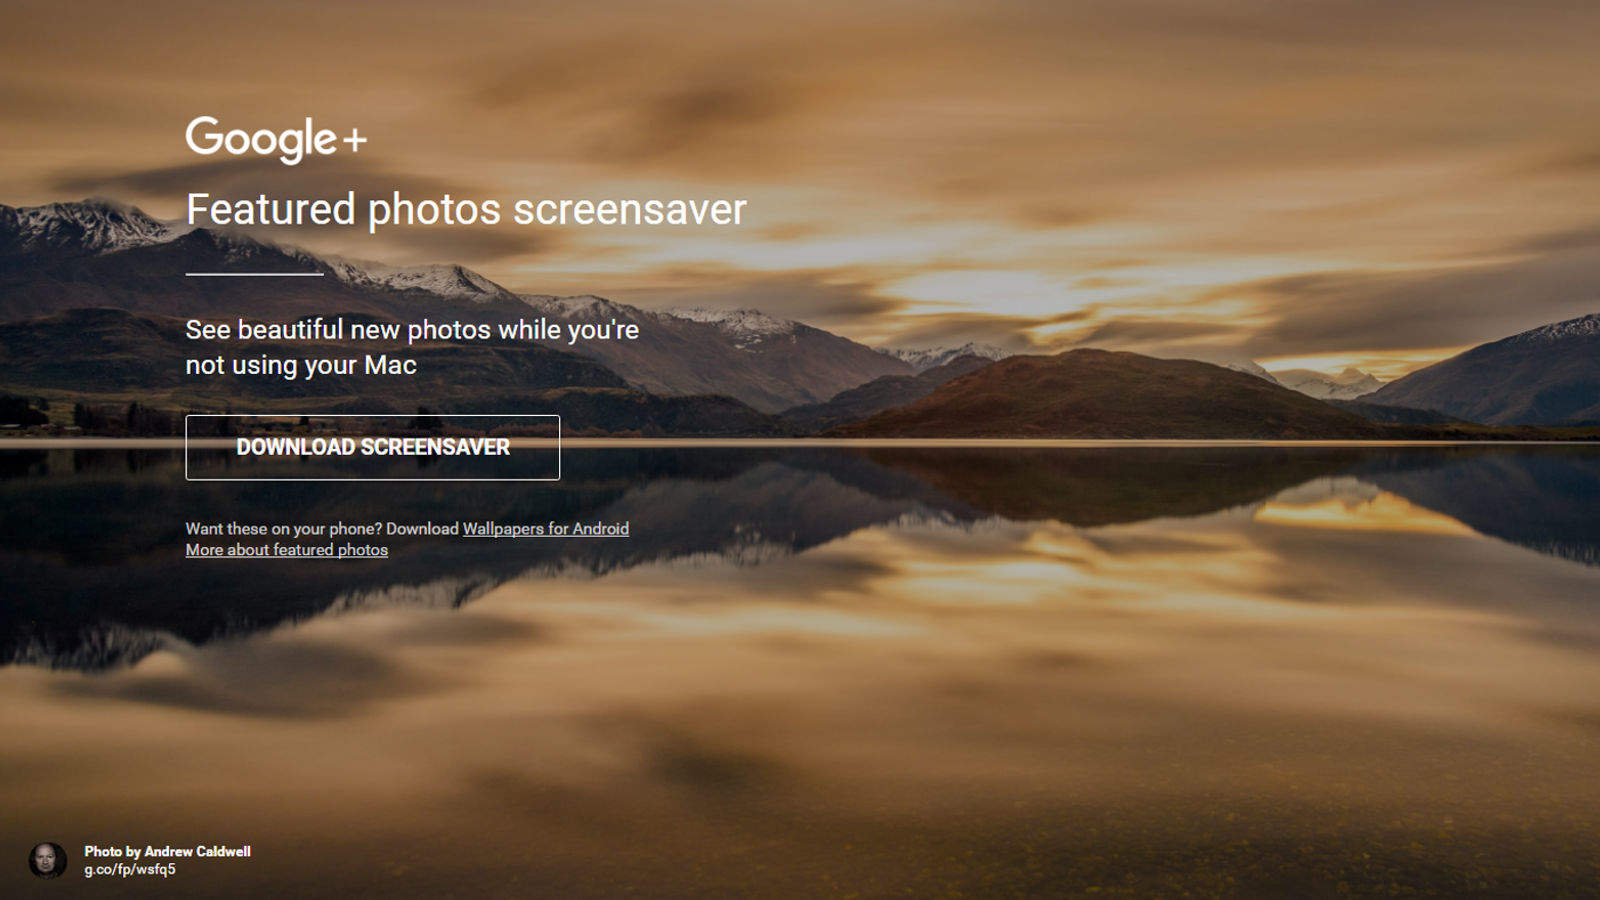 google fatured photos screen saver